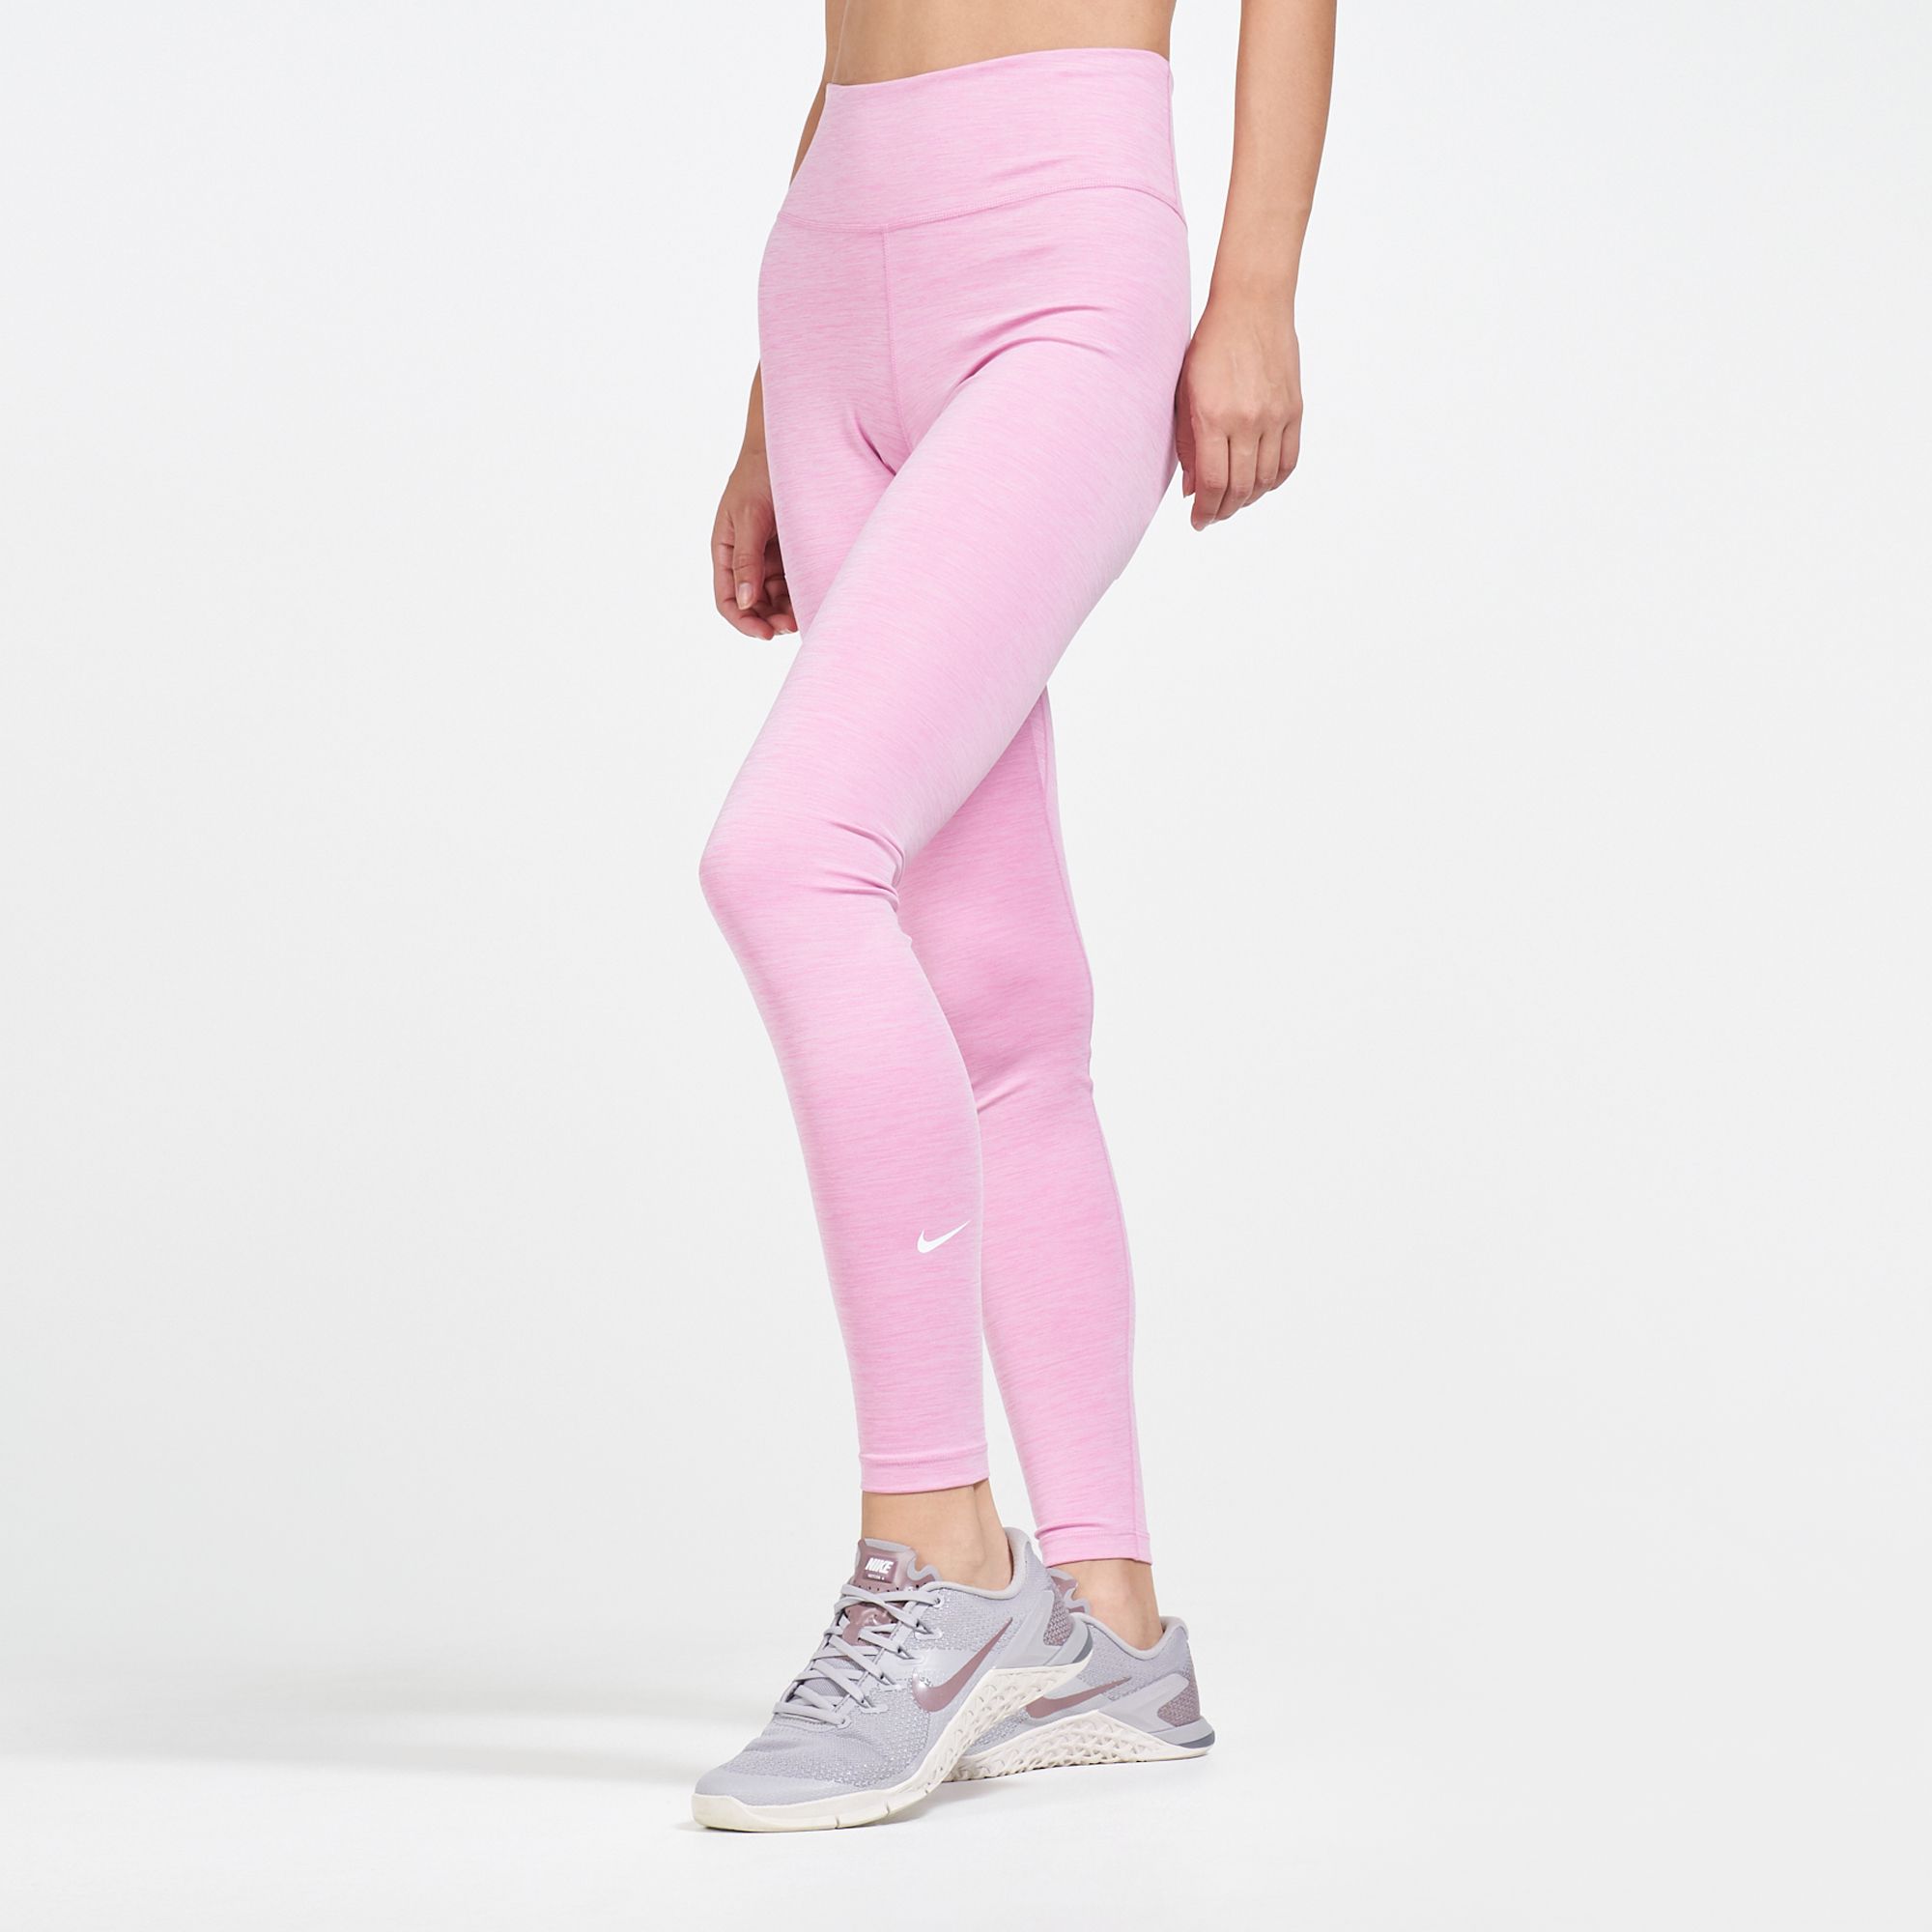 pink and grey nike leggings